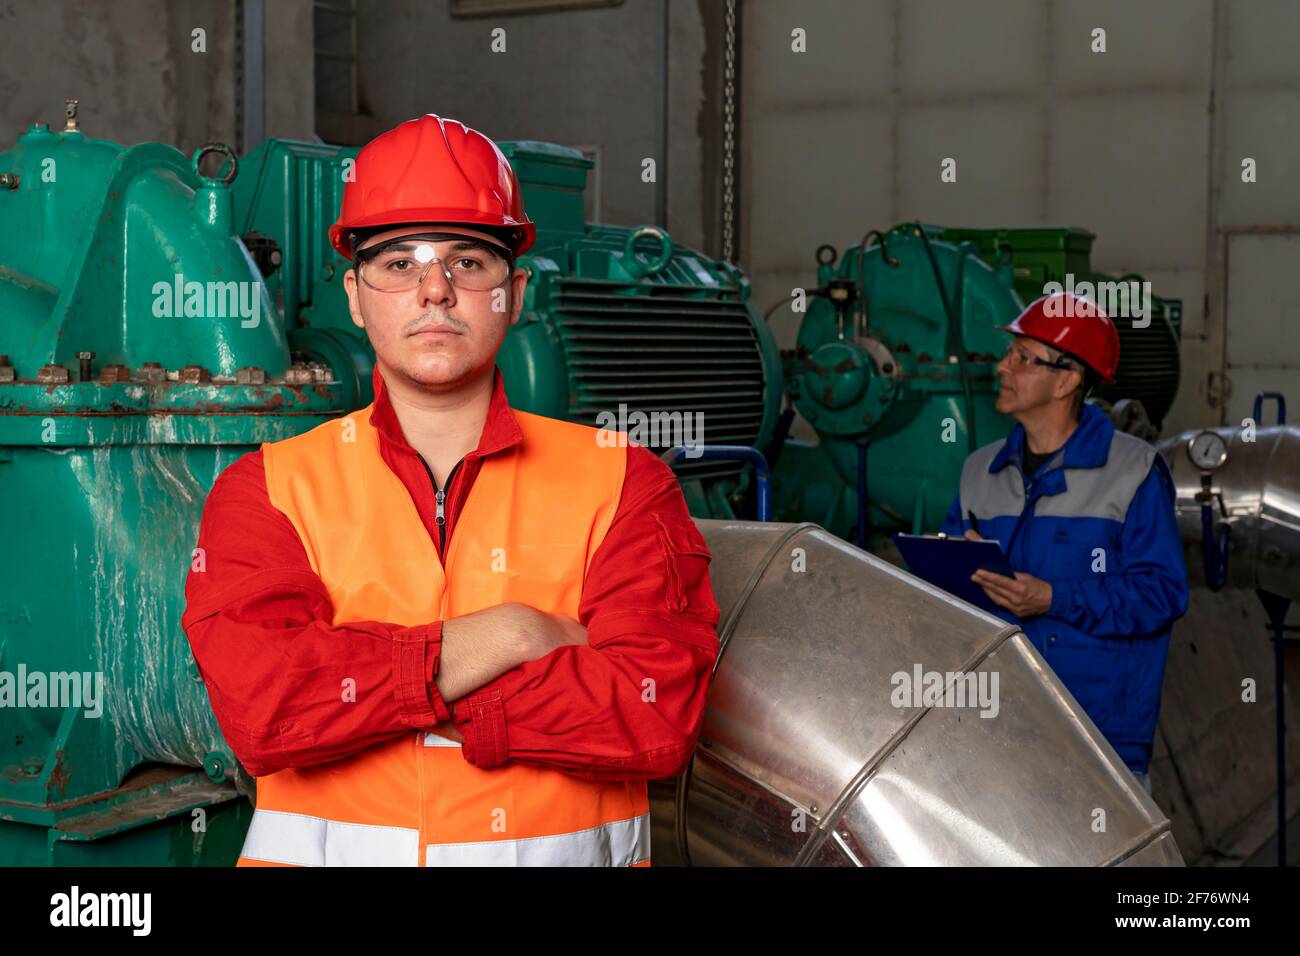 Giovane lavoratore in tute rosse e Hardhat in piedi in interni industriali con tubi e generatori. Ritratto di un operatore giovane sicuro. Foto Stock